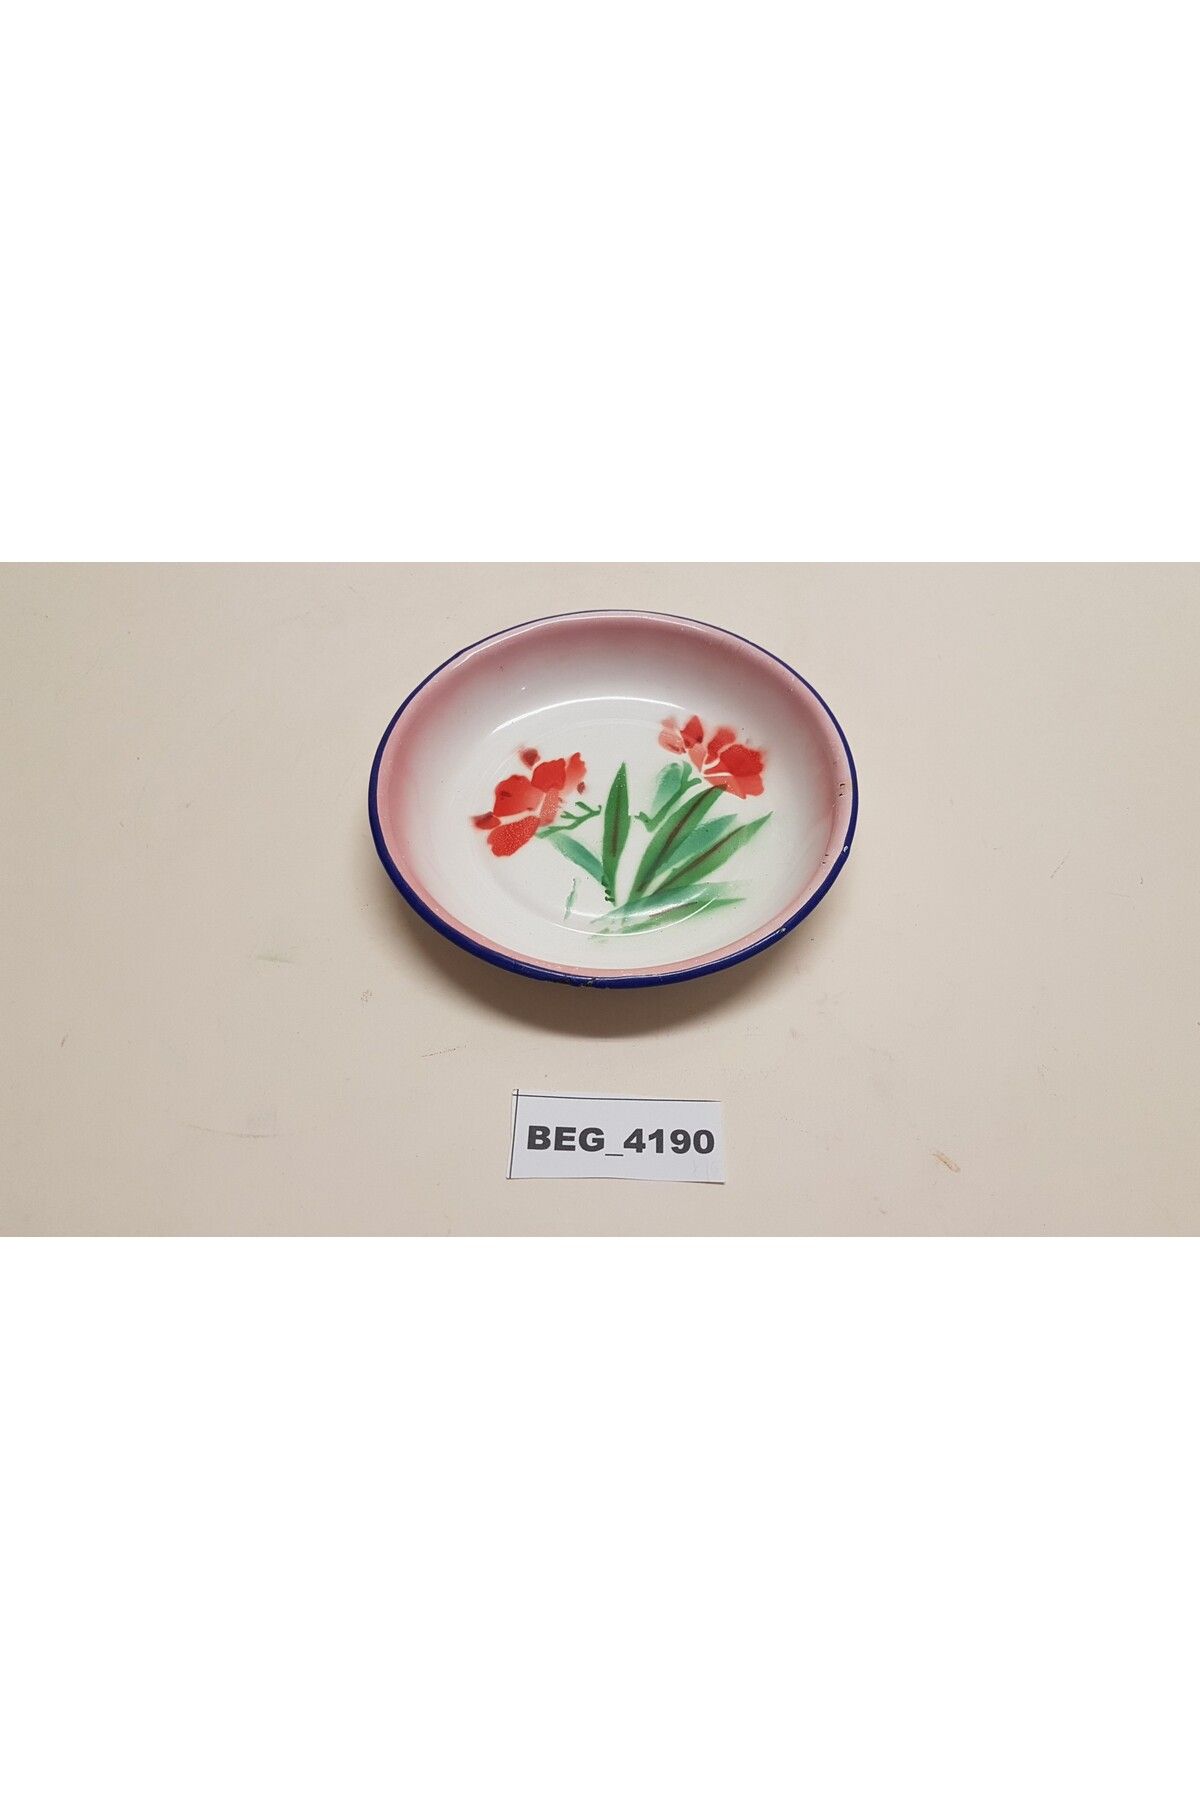 BEGÜLDAN Kırmızı Çiçekli Çinko-emaye Tabak R =15 Cm Beg_4190